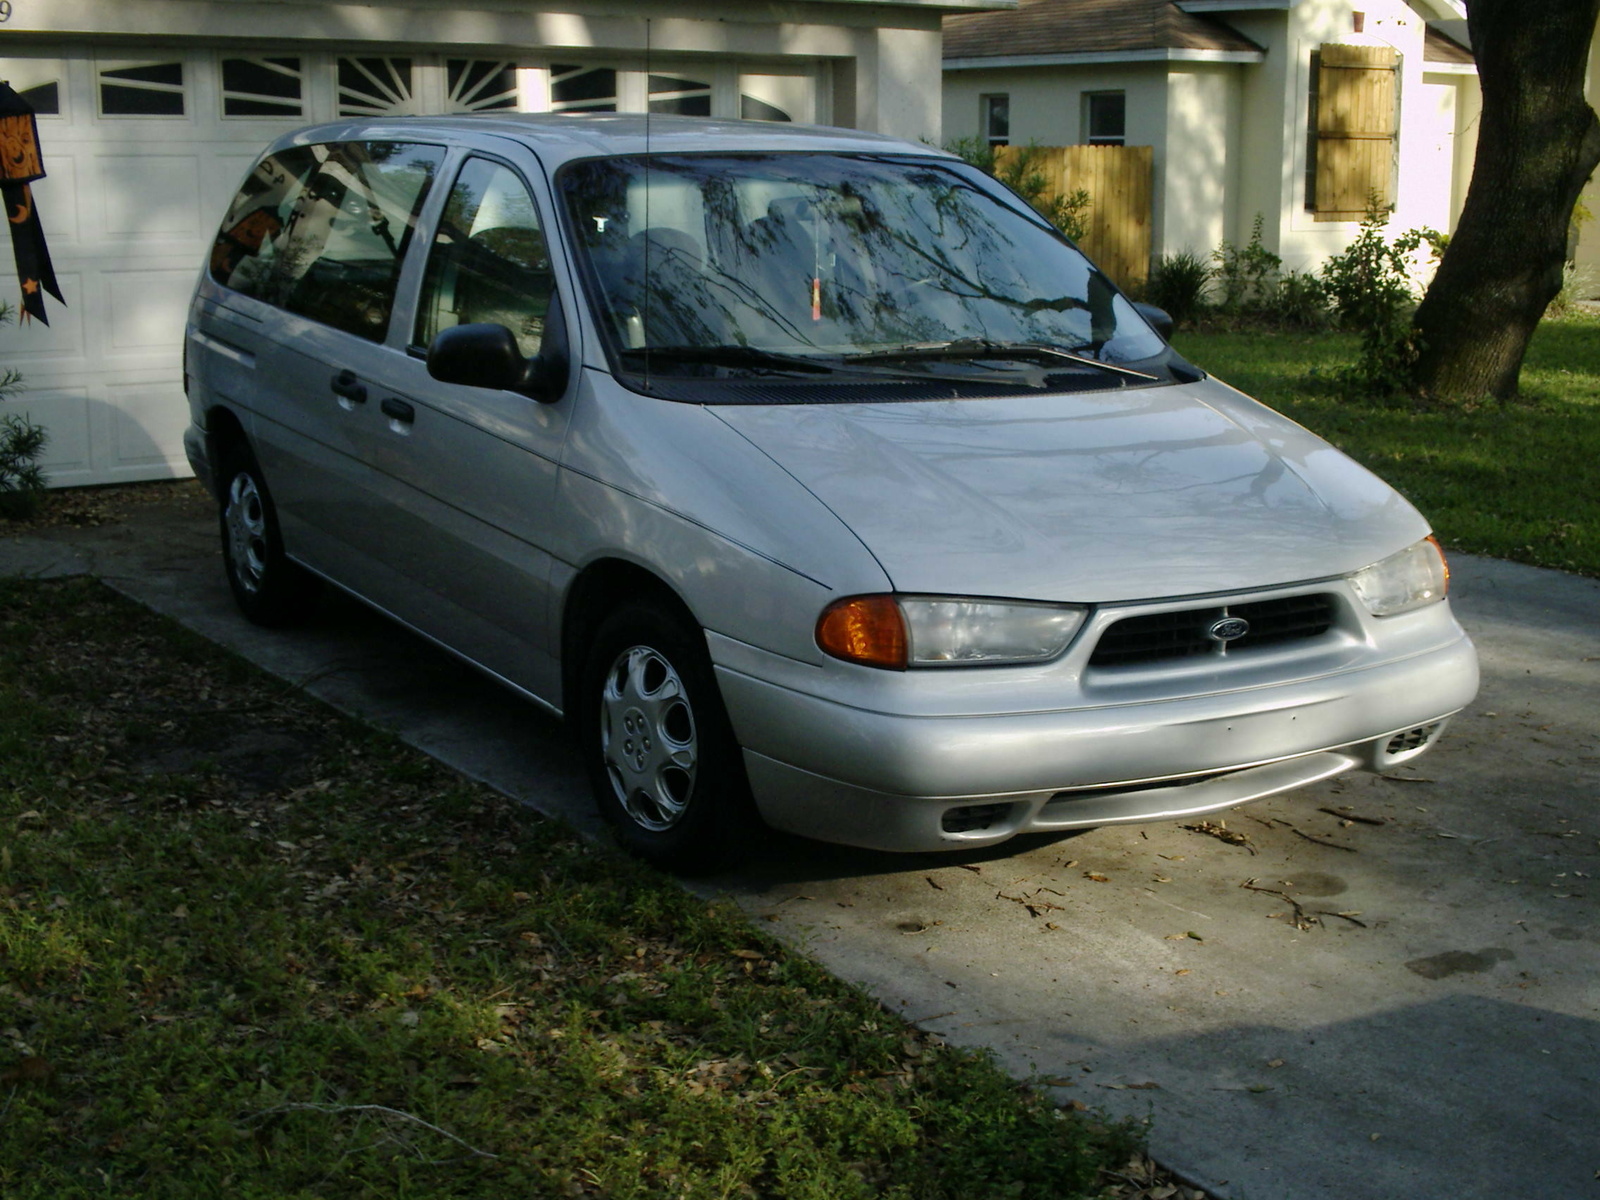 1996 Ford windstar gl minivan altinator #1